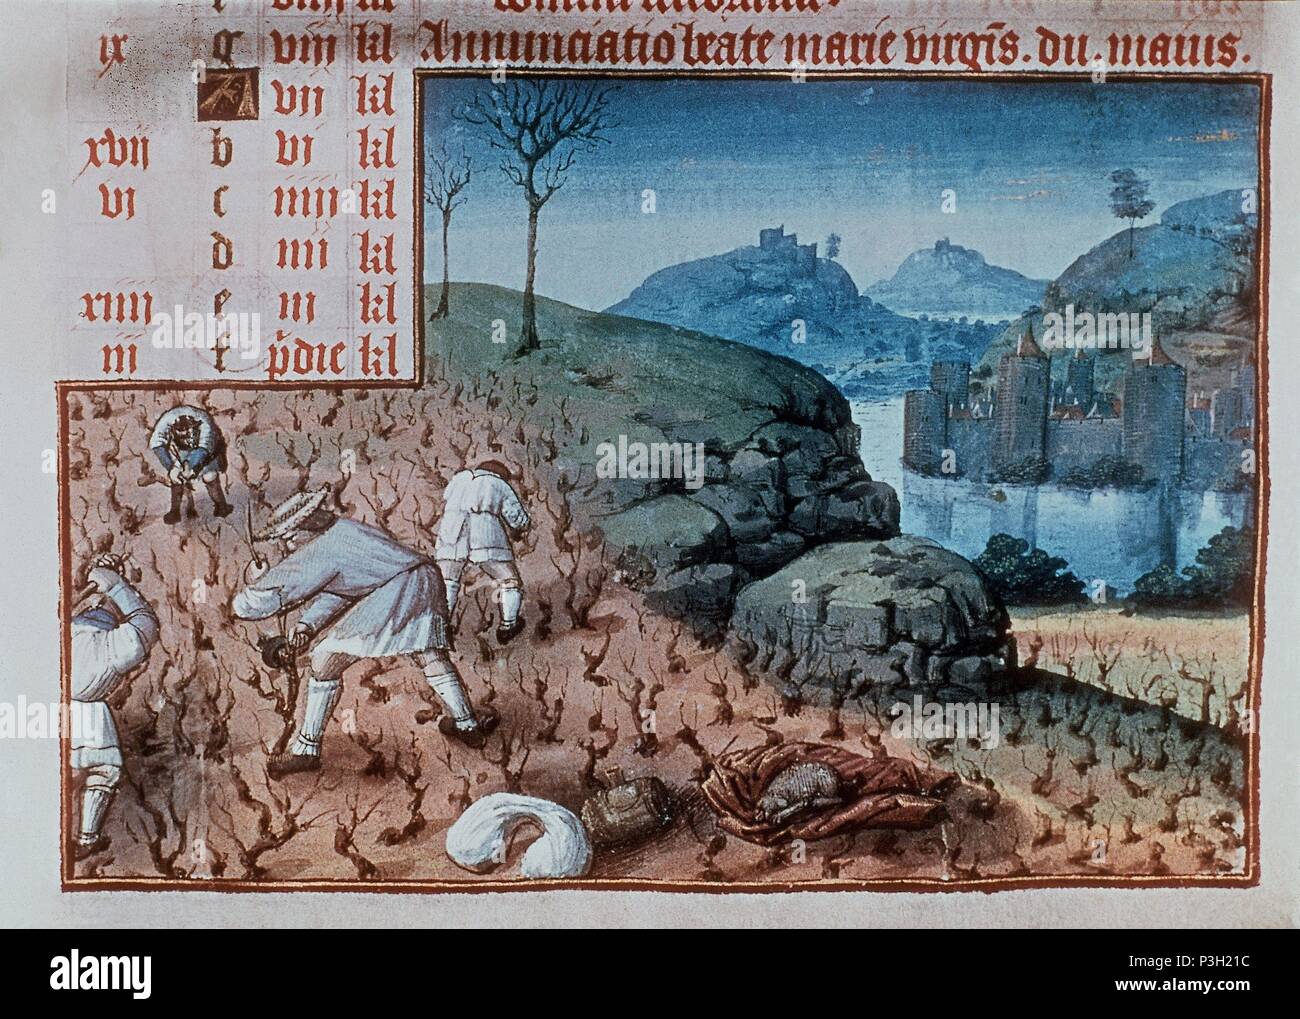 Mittelalterliche AGRICULTORES PODANDO LAS VIÑAS - LIBRO DE HORAS DE 1430 AL MODO DEL LIBRO HORAS del Duque de Berry. Ort: ZENTRALBIBLIOTHEK, Frankreich. Stockfoto